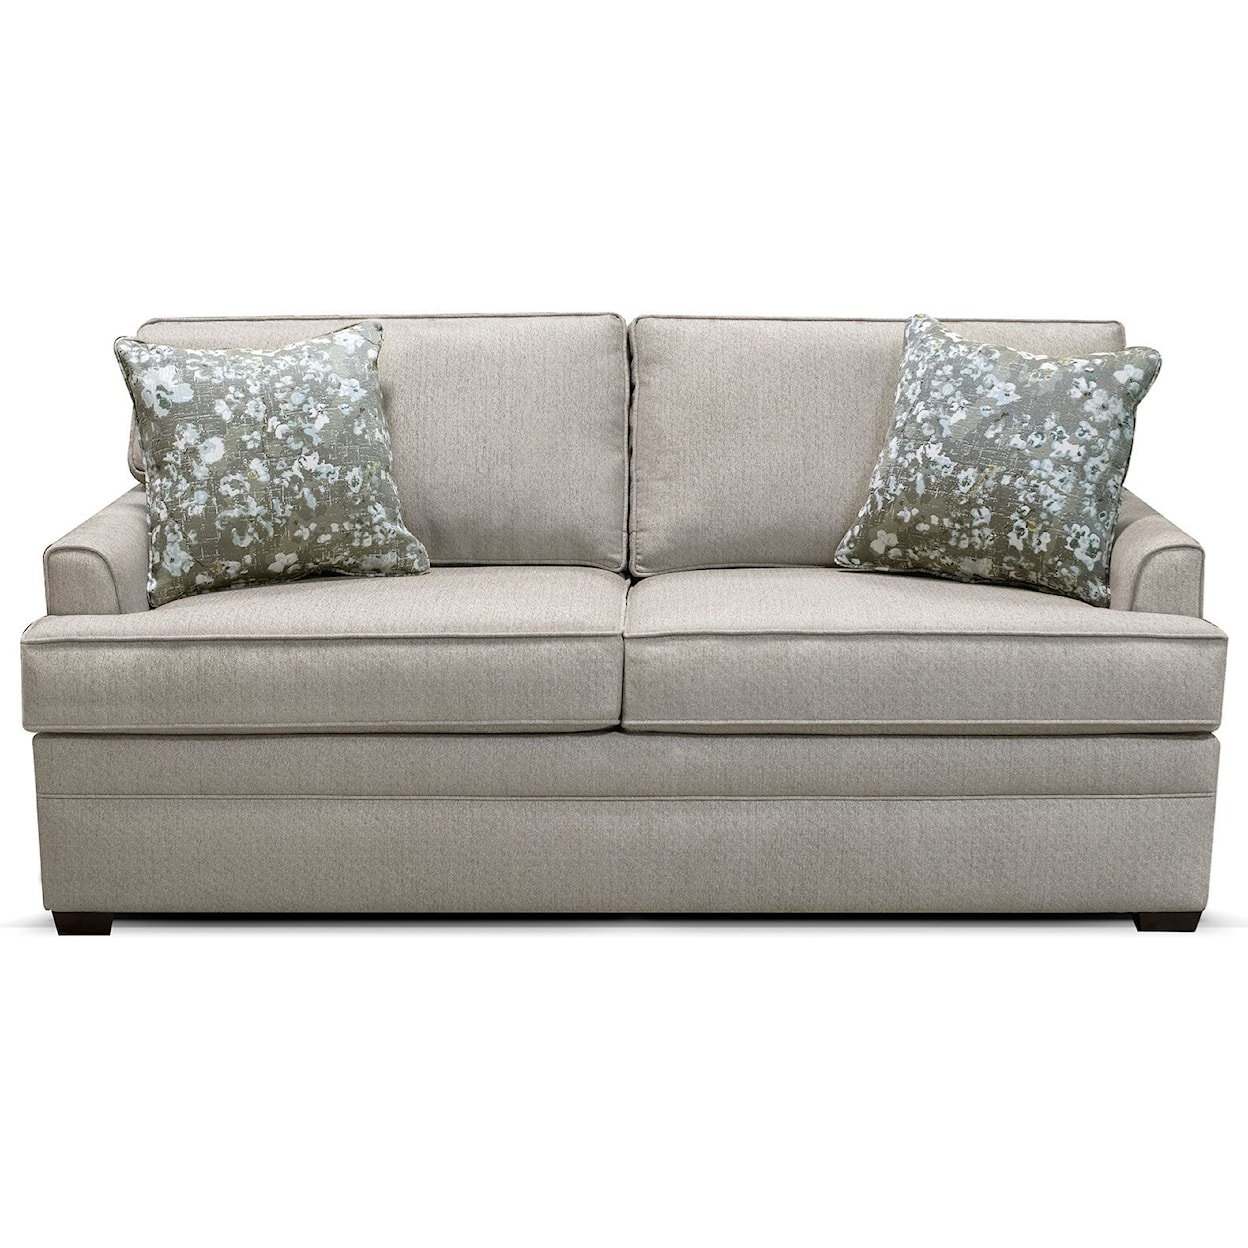 Dimensions 9R00 Series 2-Cushion Sofa